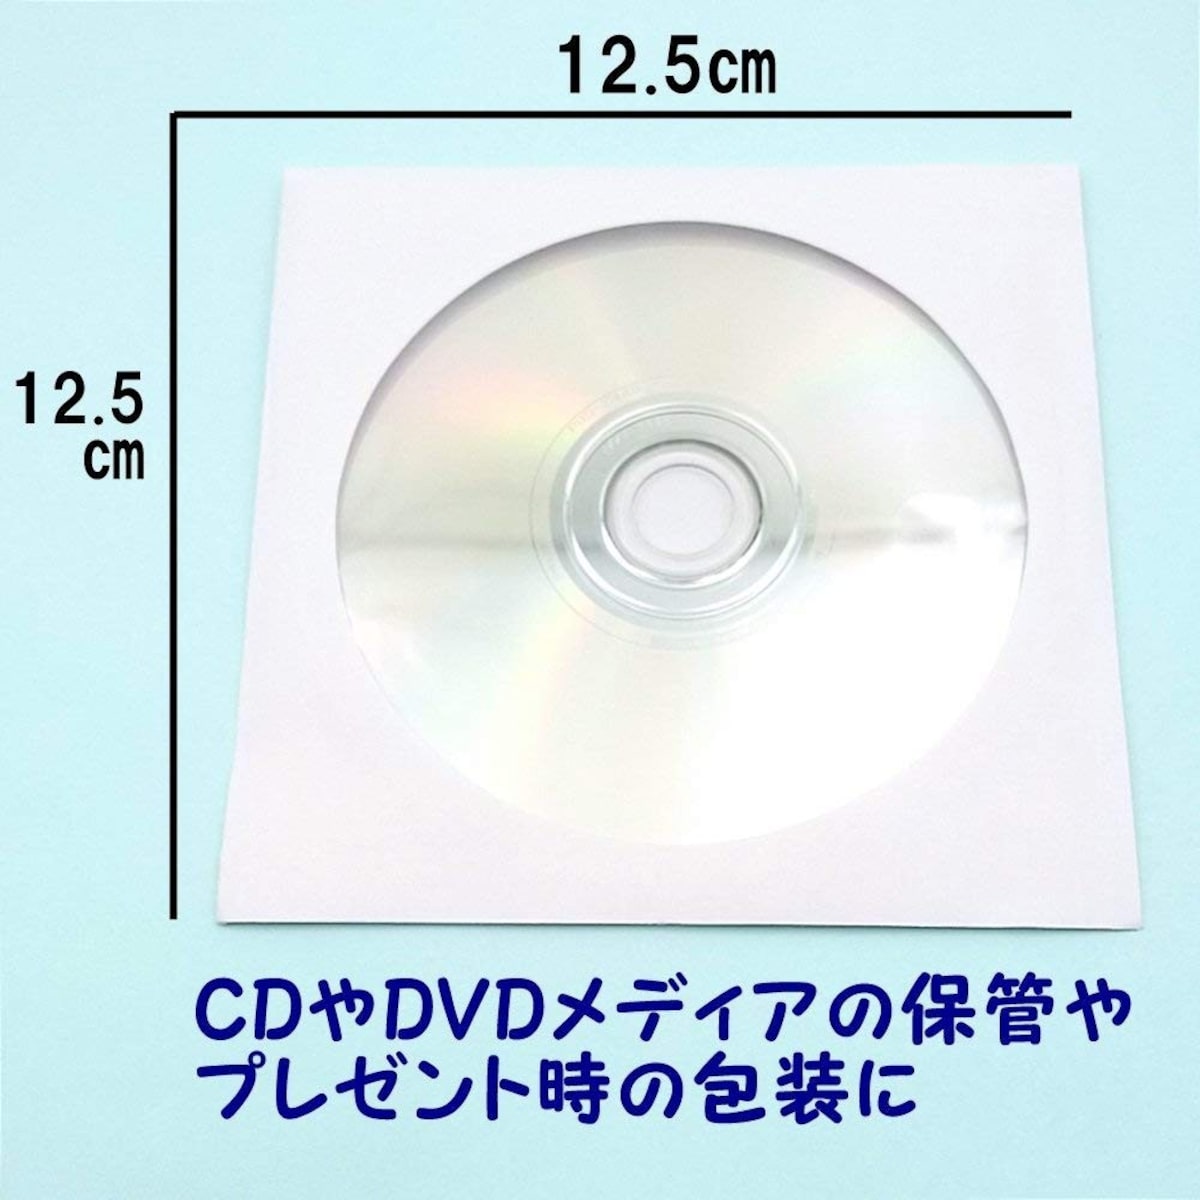  CD/DVD ケース  紙製画像2 